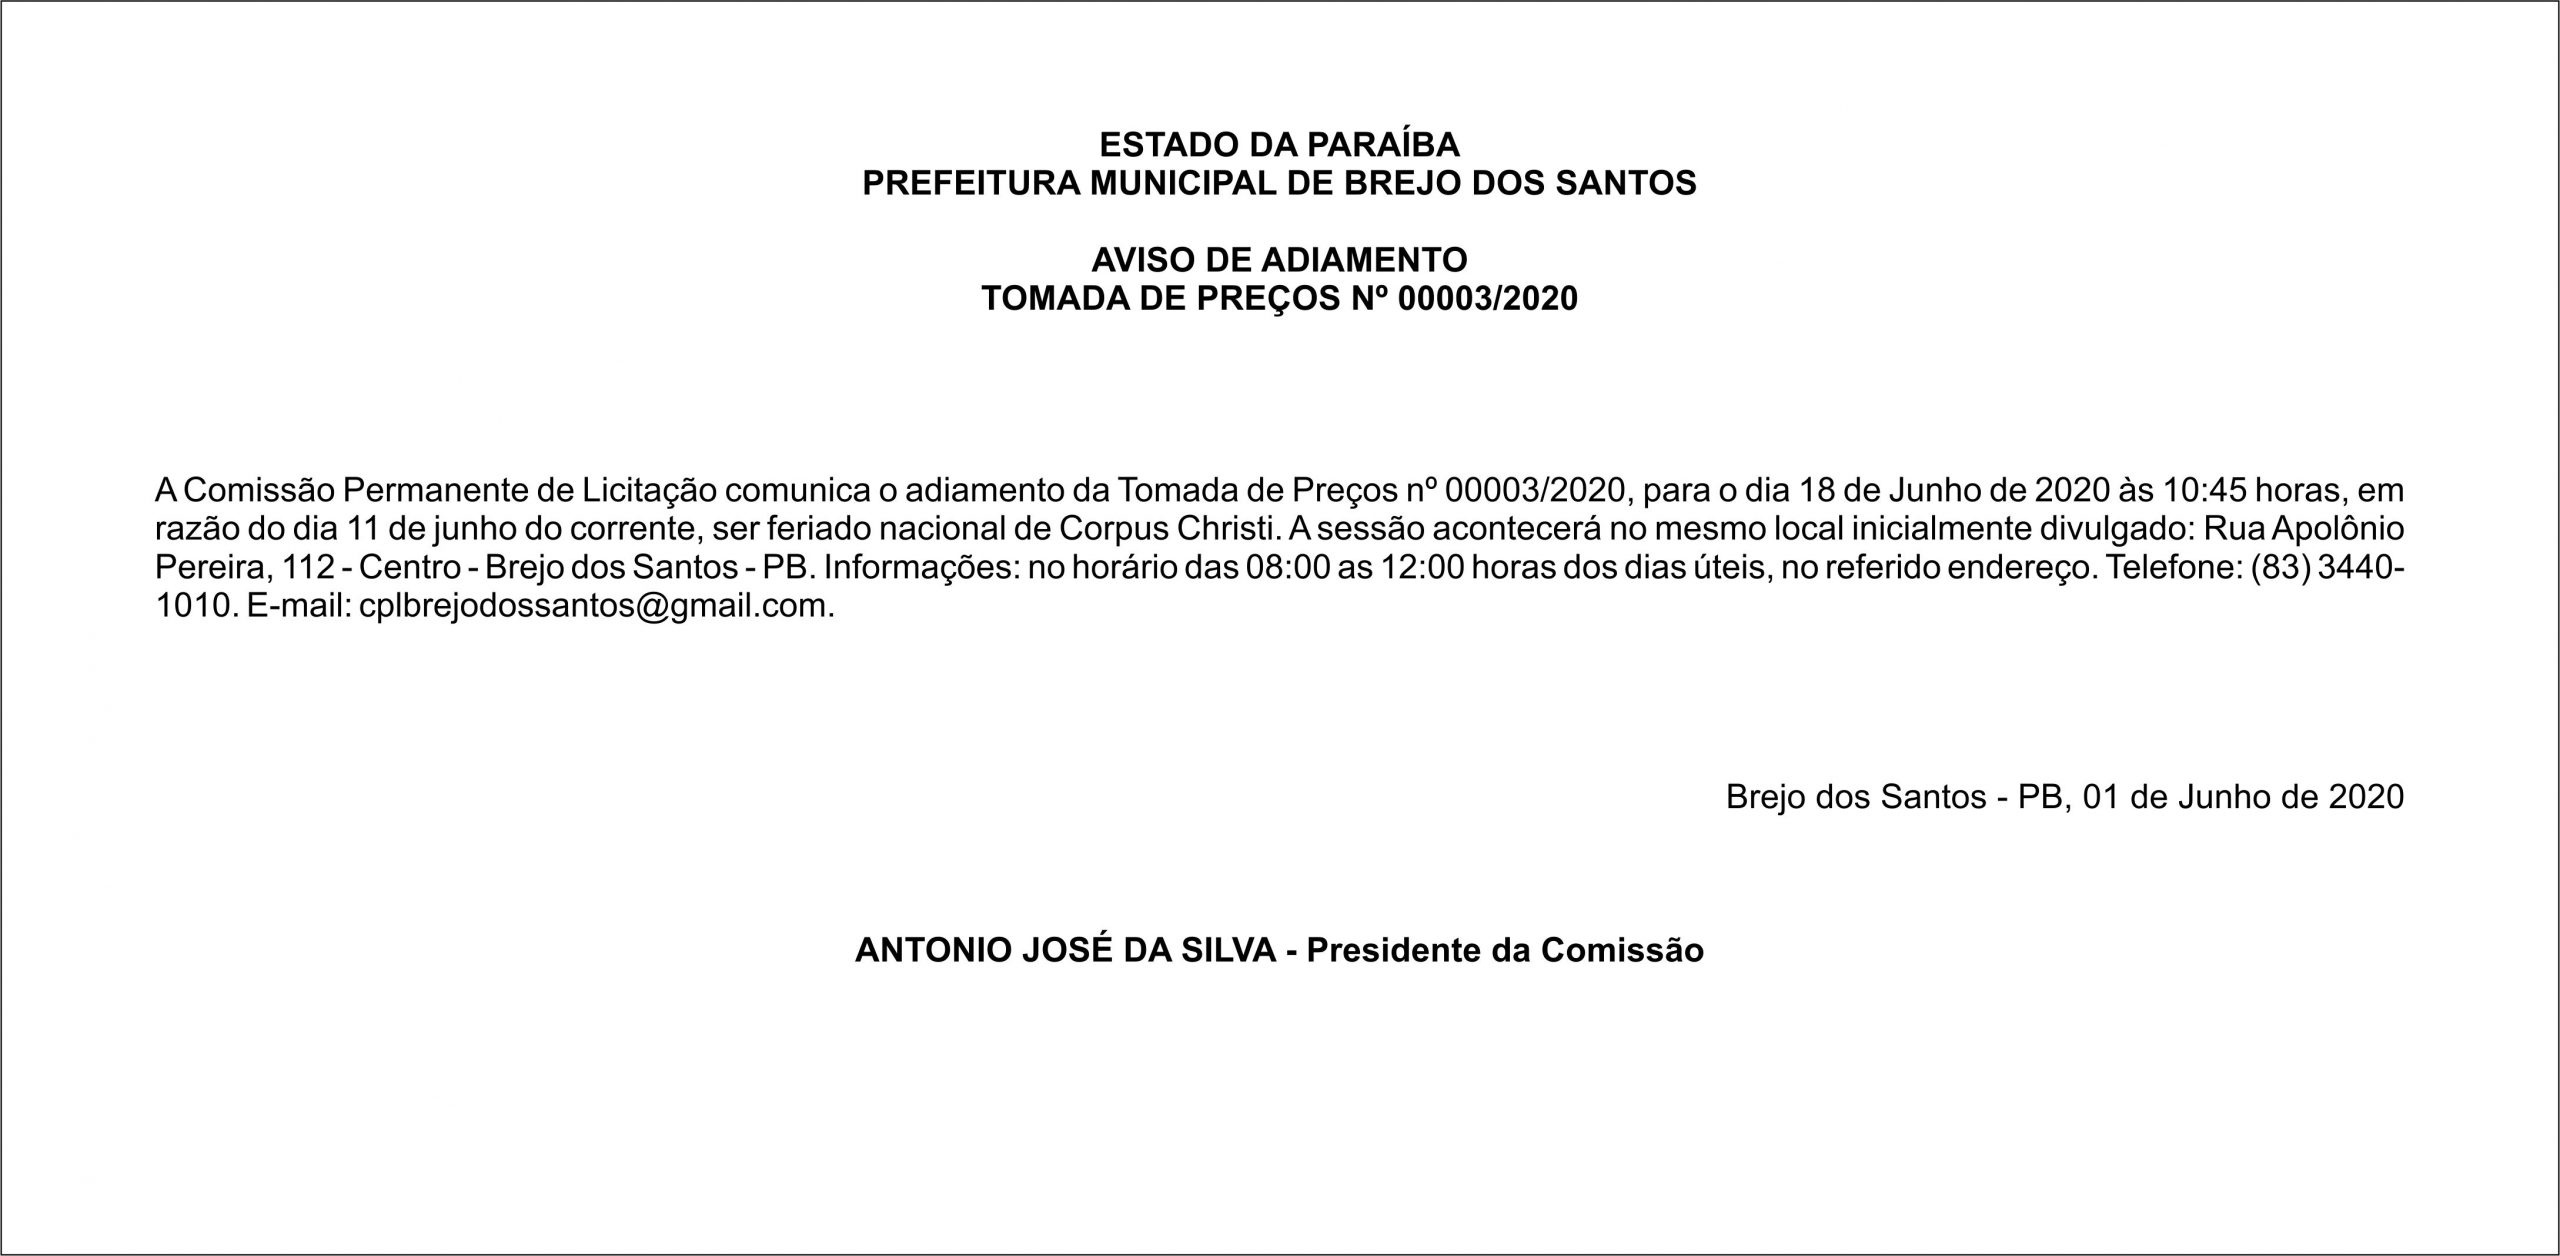 PREFEITURA MUNICIPAL DE BREJO DOS SANTOS – AVISO DE ADIAMENTO – TOMADA DE PREÇOS Nº 00003/2020